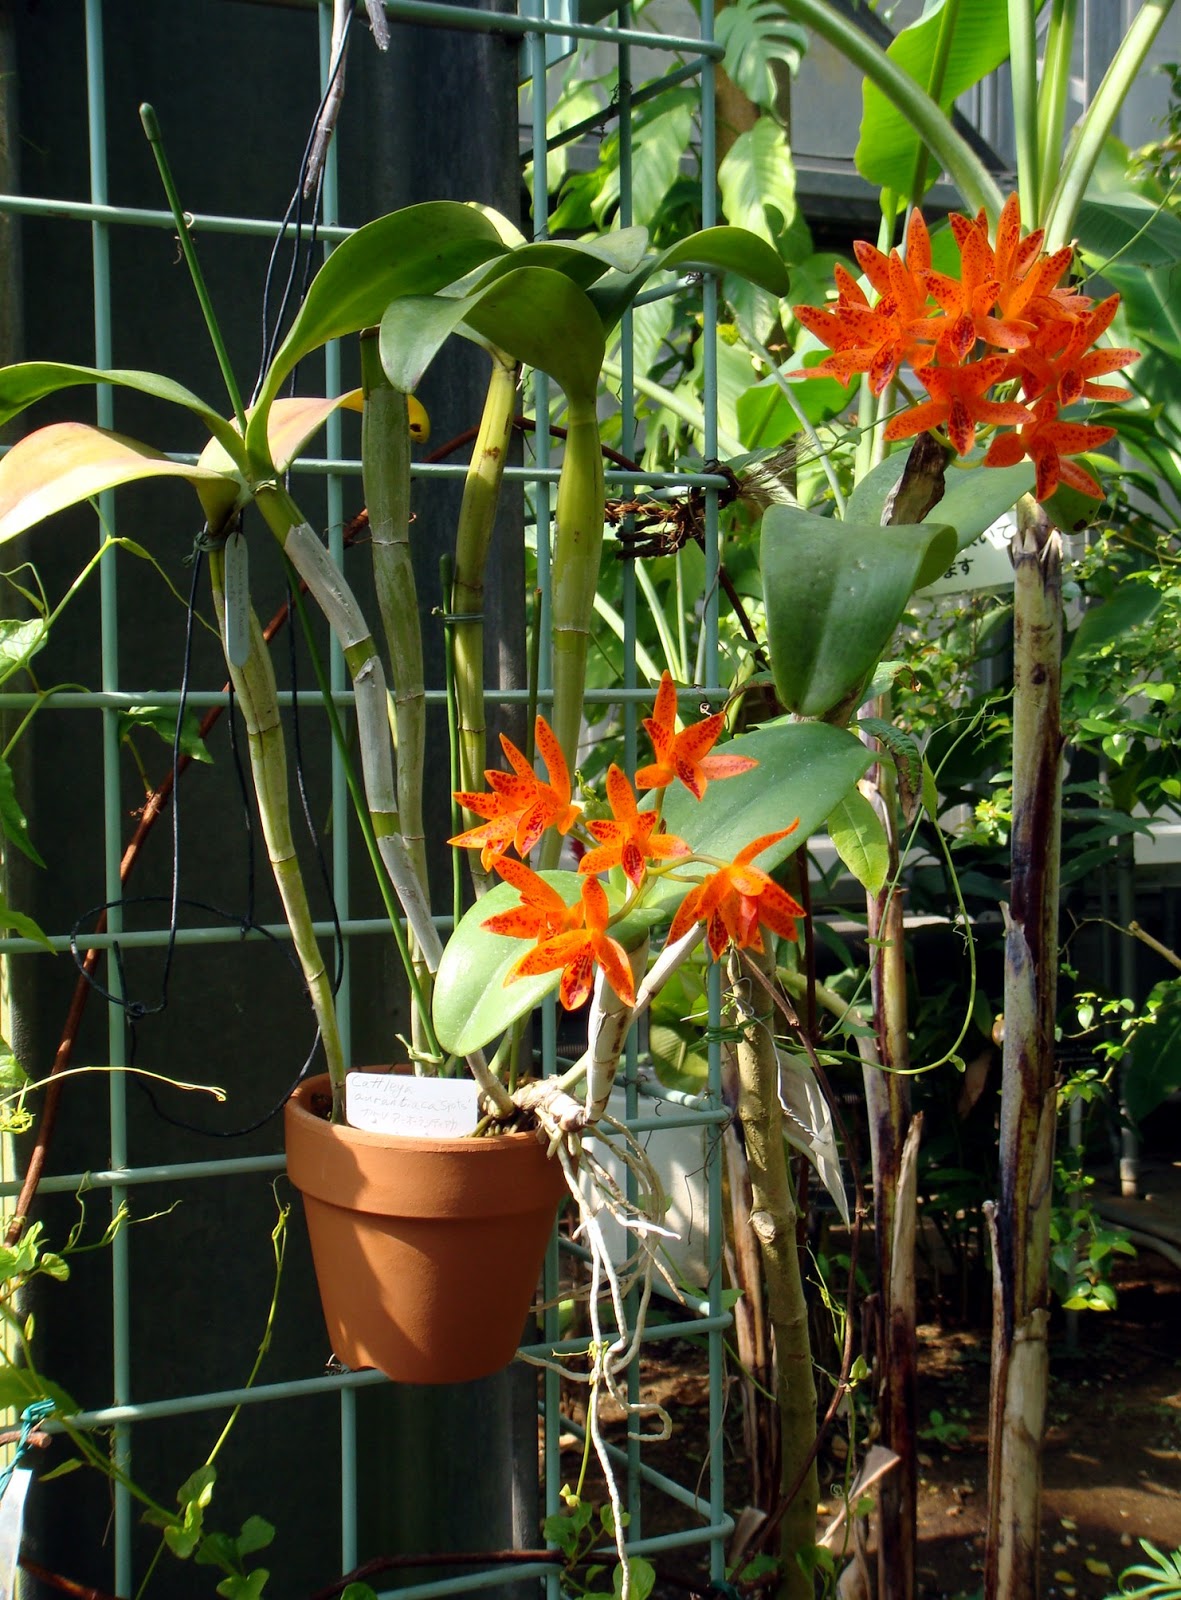 Guarianthe aurantiaca care and culture | Travaldo's blog